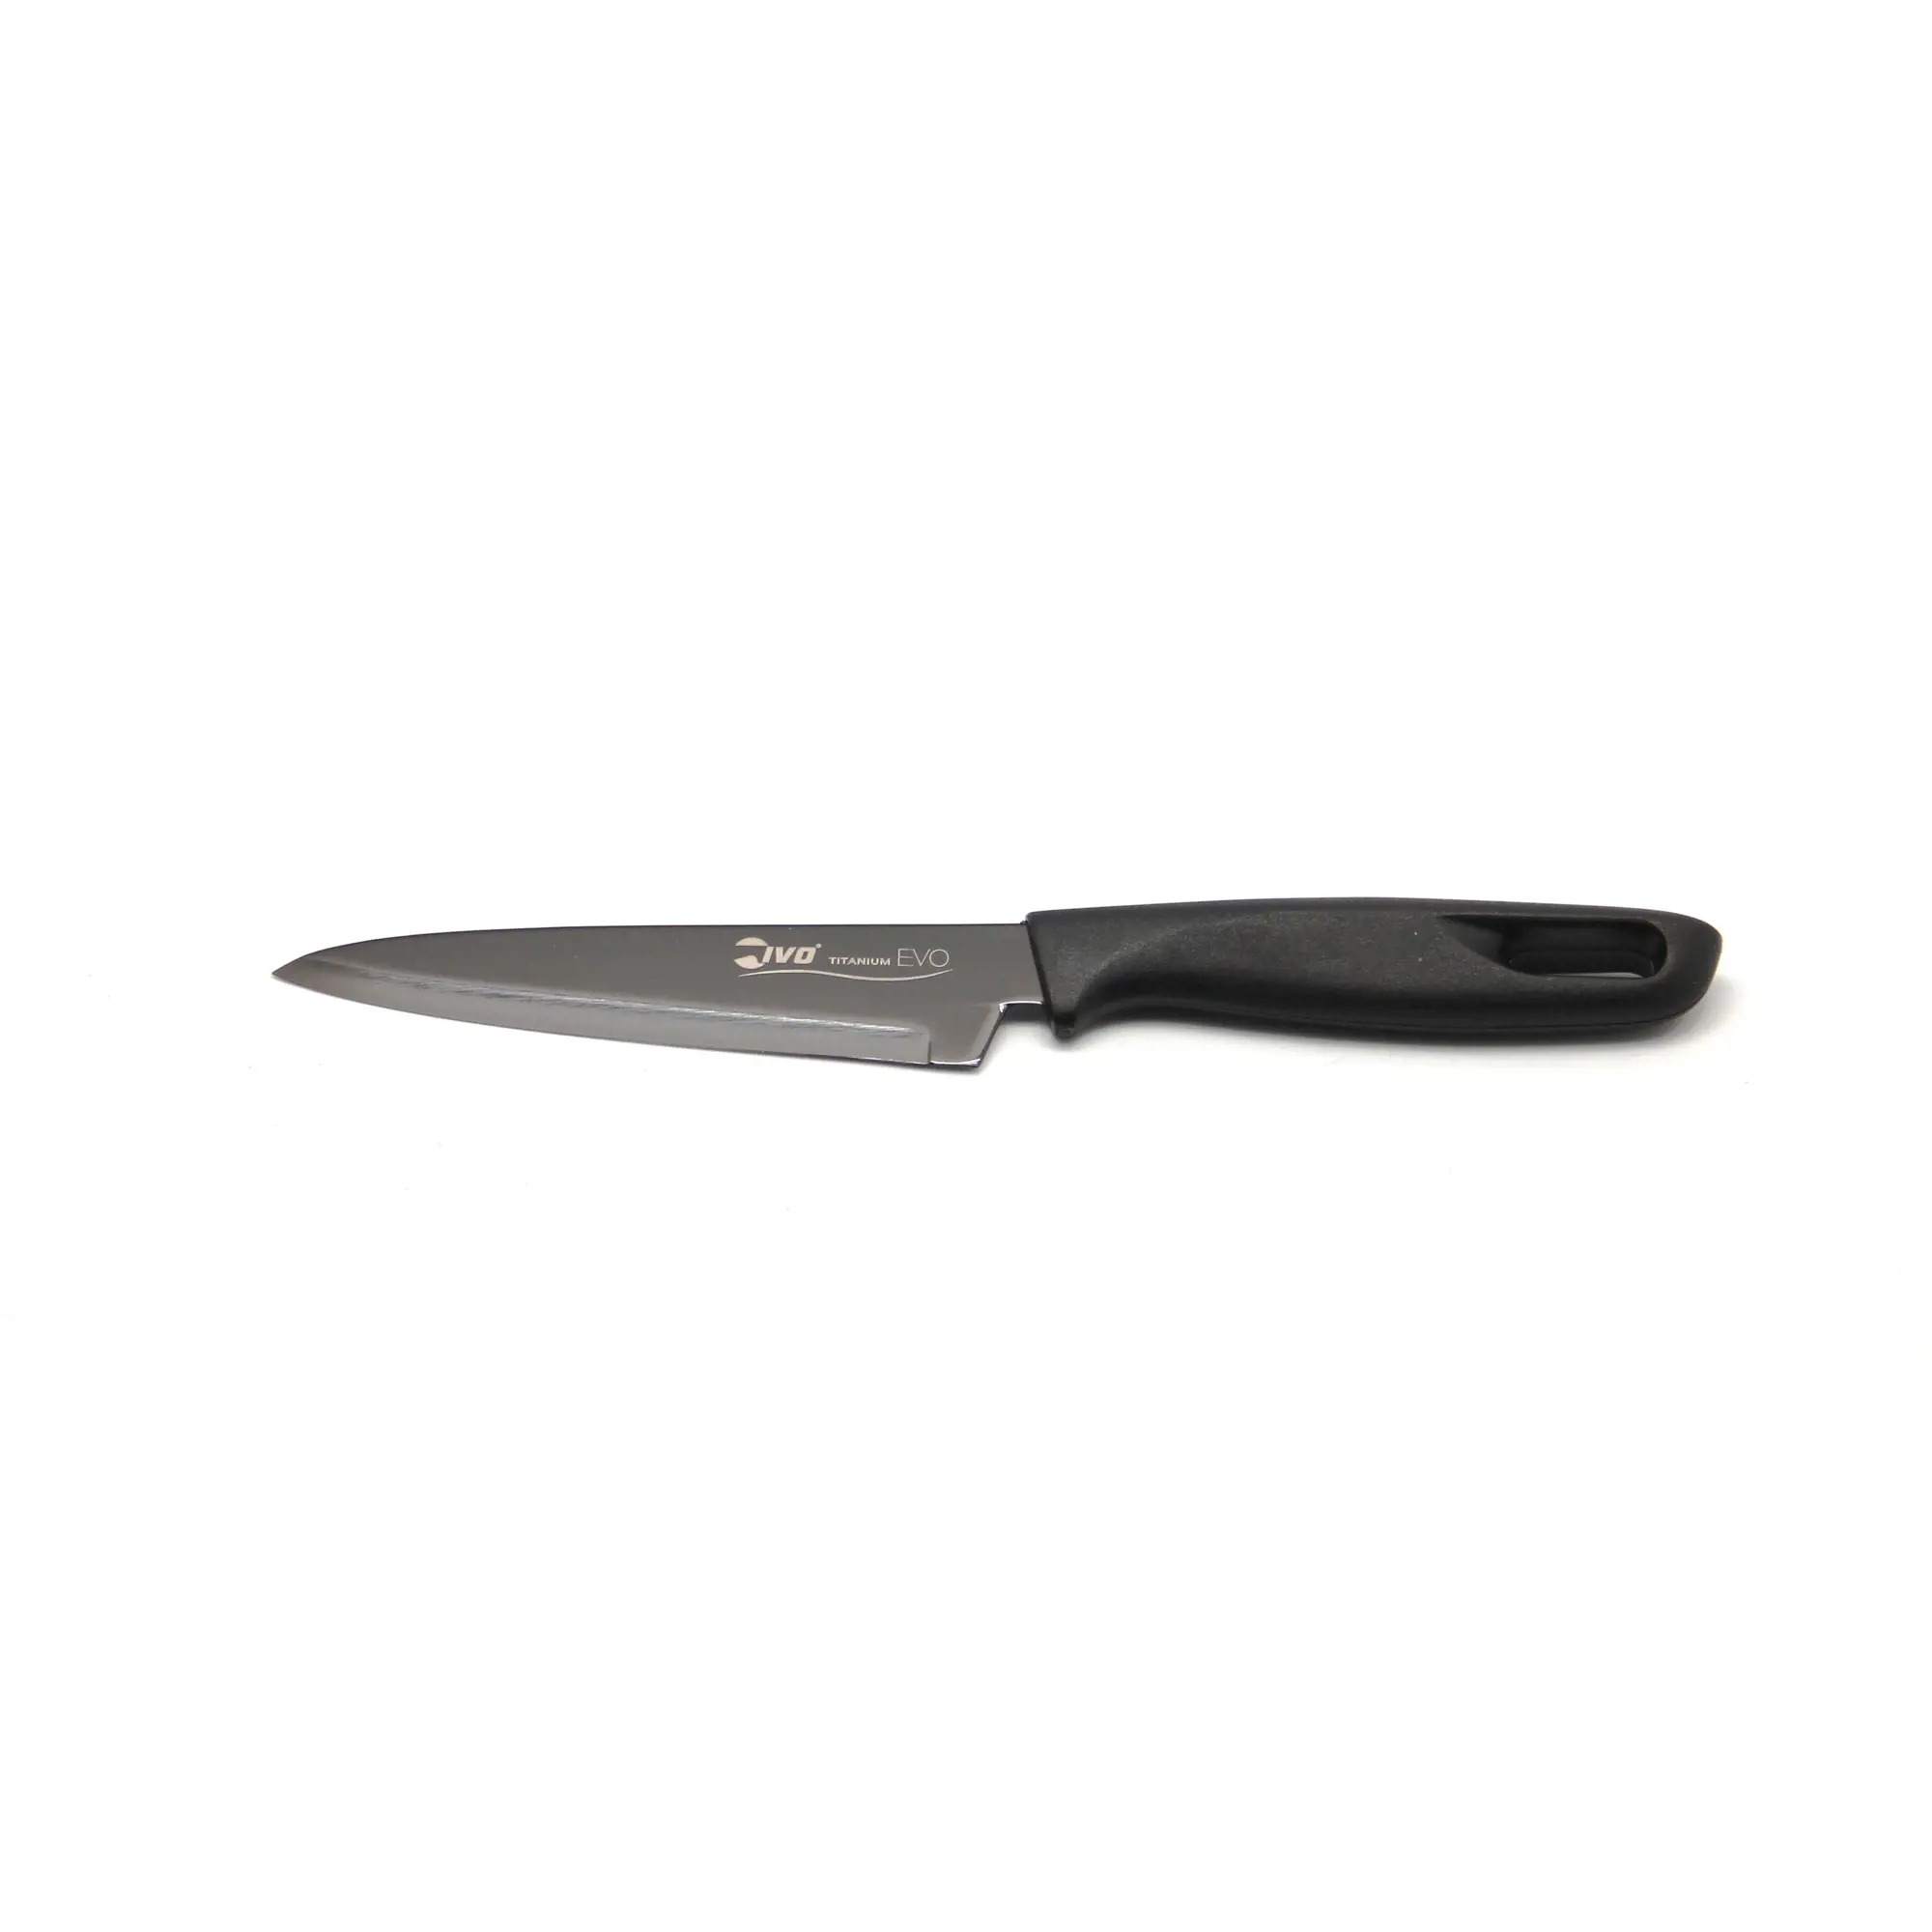 Нож универсальный кухонный Ivo Titanium Evo 12 см нож универсальный кухонный ivo titanium evo 12 см